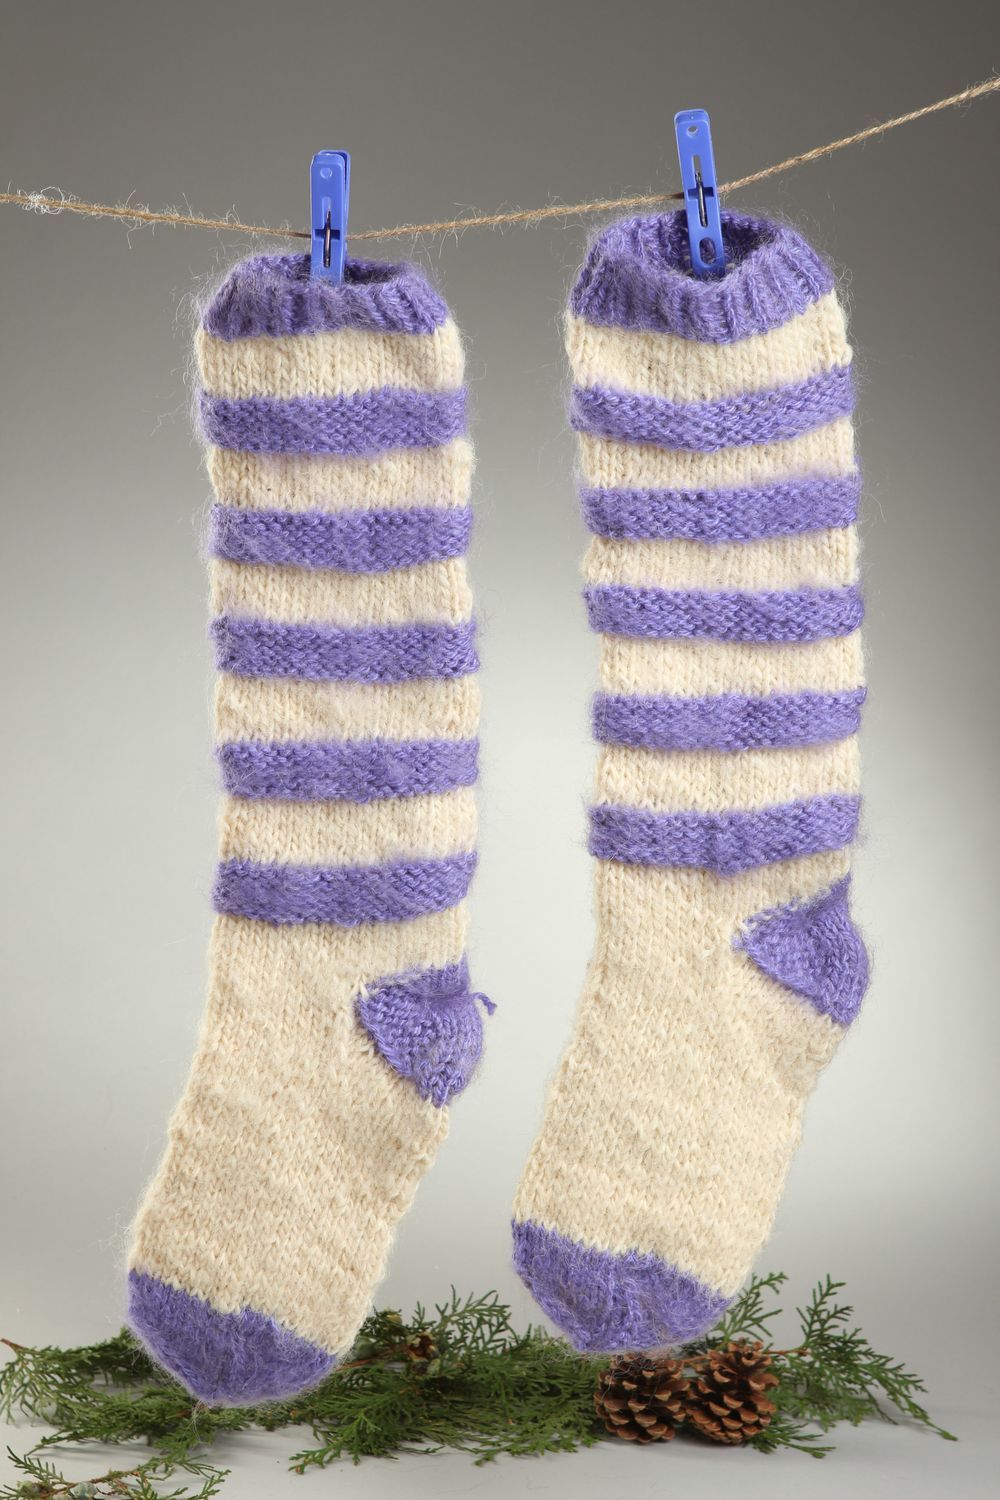 Handmade warm socks wool socks knitted socks for women winter clothing photo 1